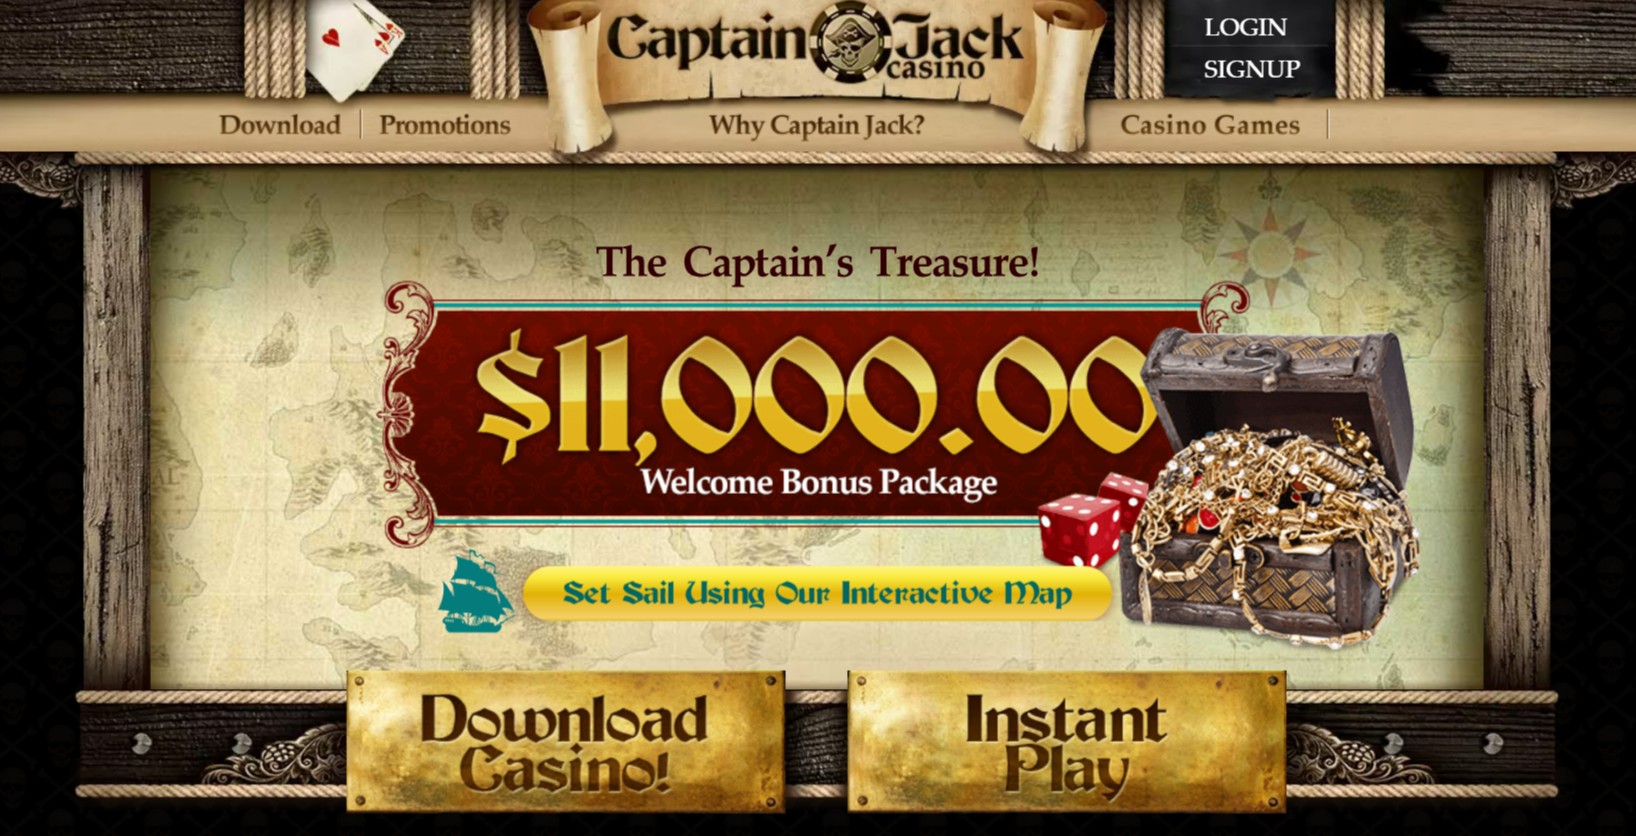 Captain Jack Casino homepage screenshot